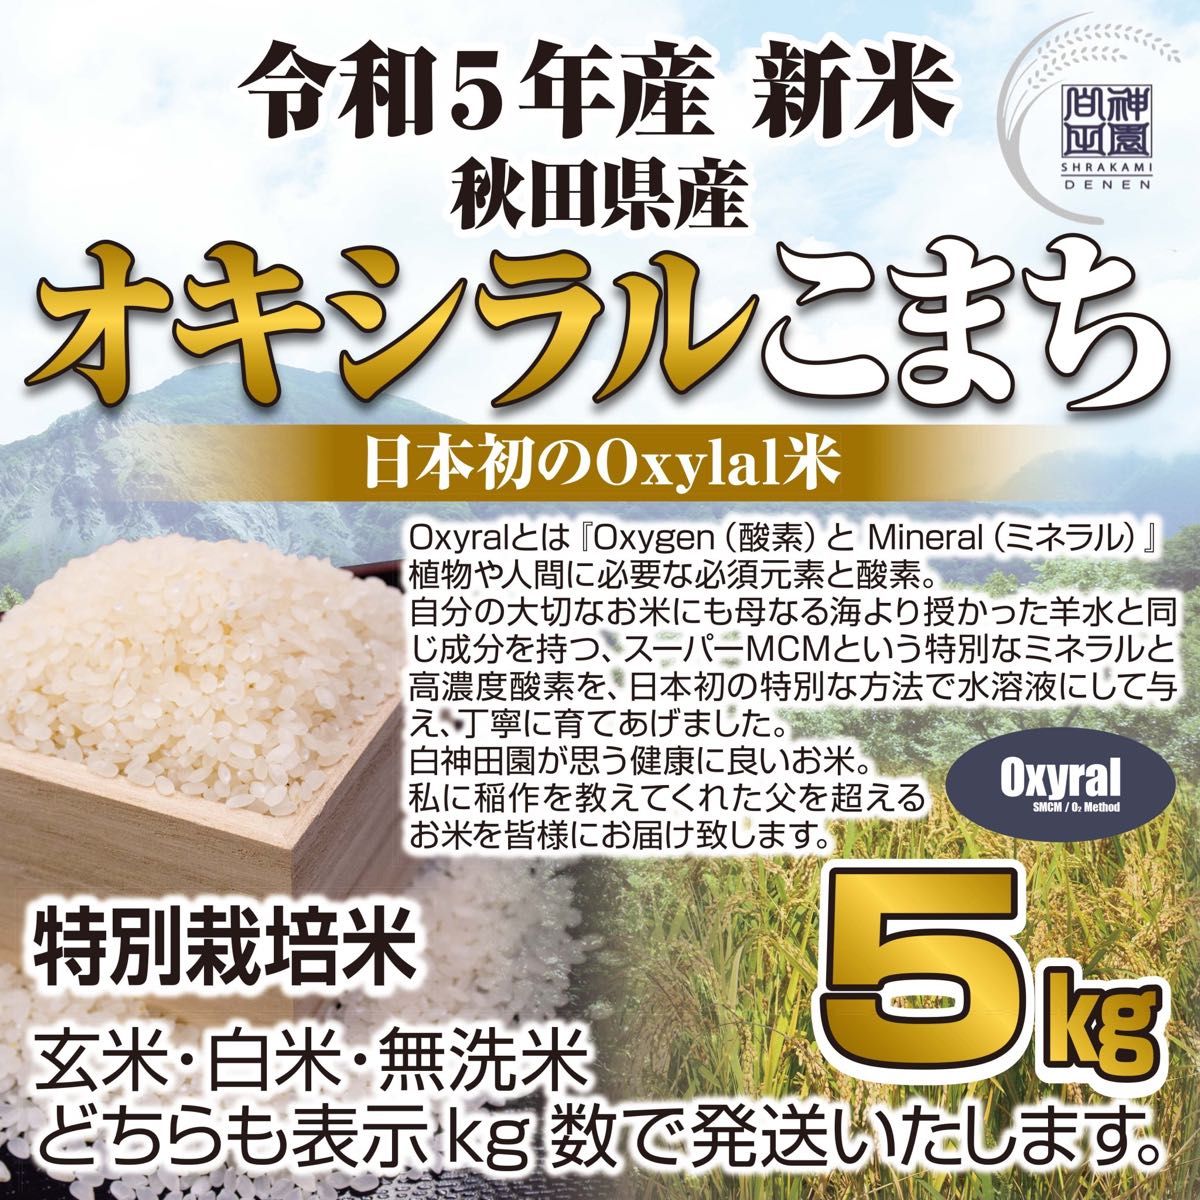 日本初Oxylal米 秋田県産 あきたこまち特別栽培米 オキシラルこまち５kg 自然由来Oxylal栽培